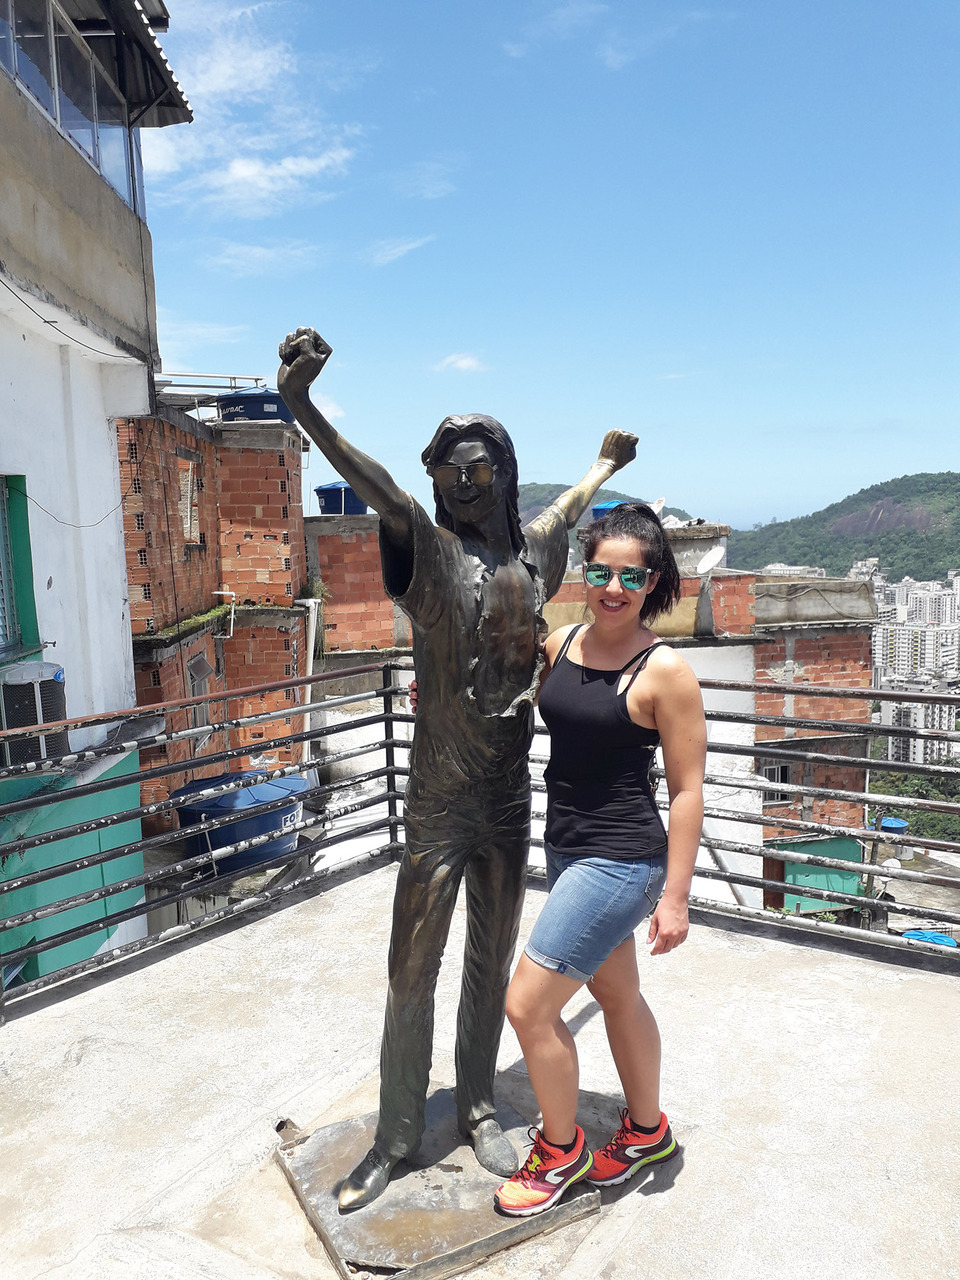 Favela Santa Marta, Michael Jackson életnagyságú szobra, és a cikk szerzője. Paár Eszter Szilvia felvétele, 2019.